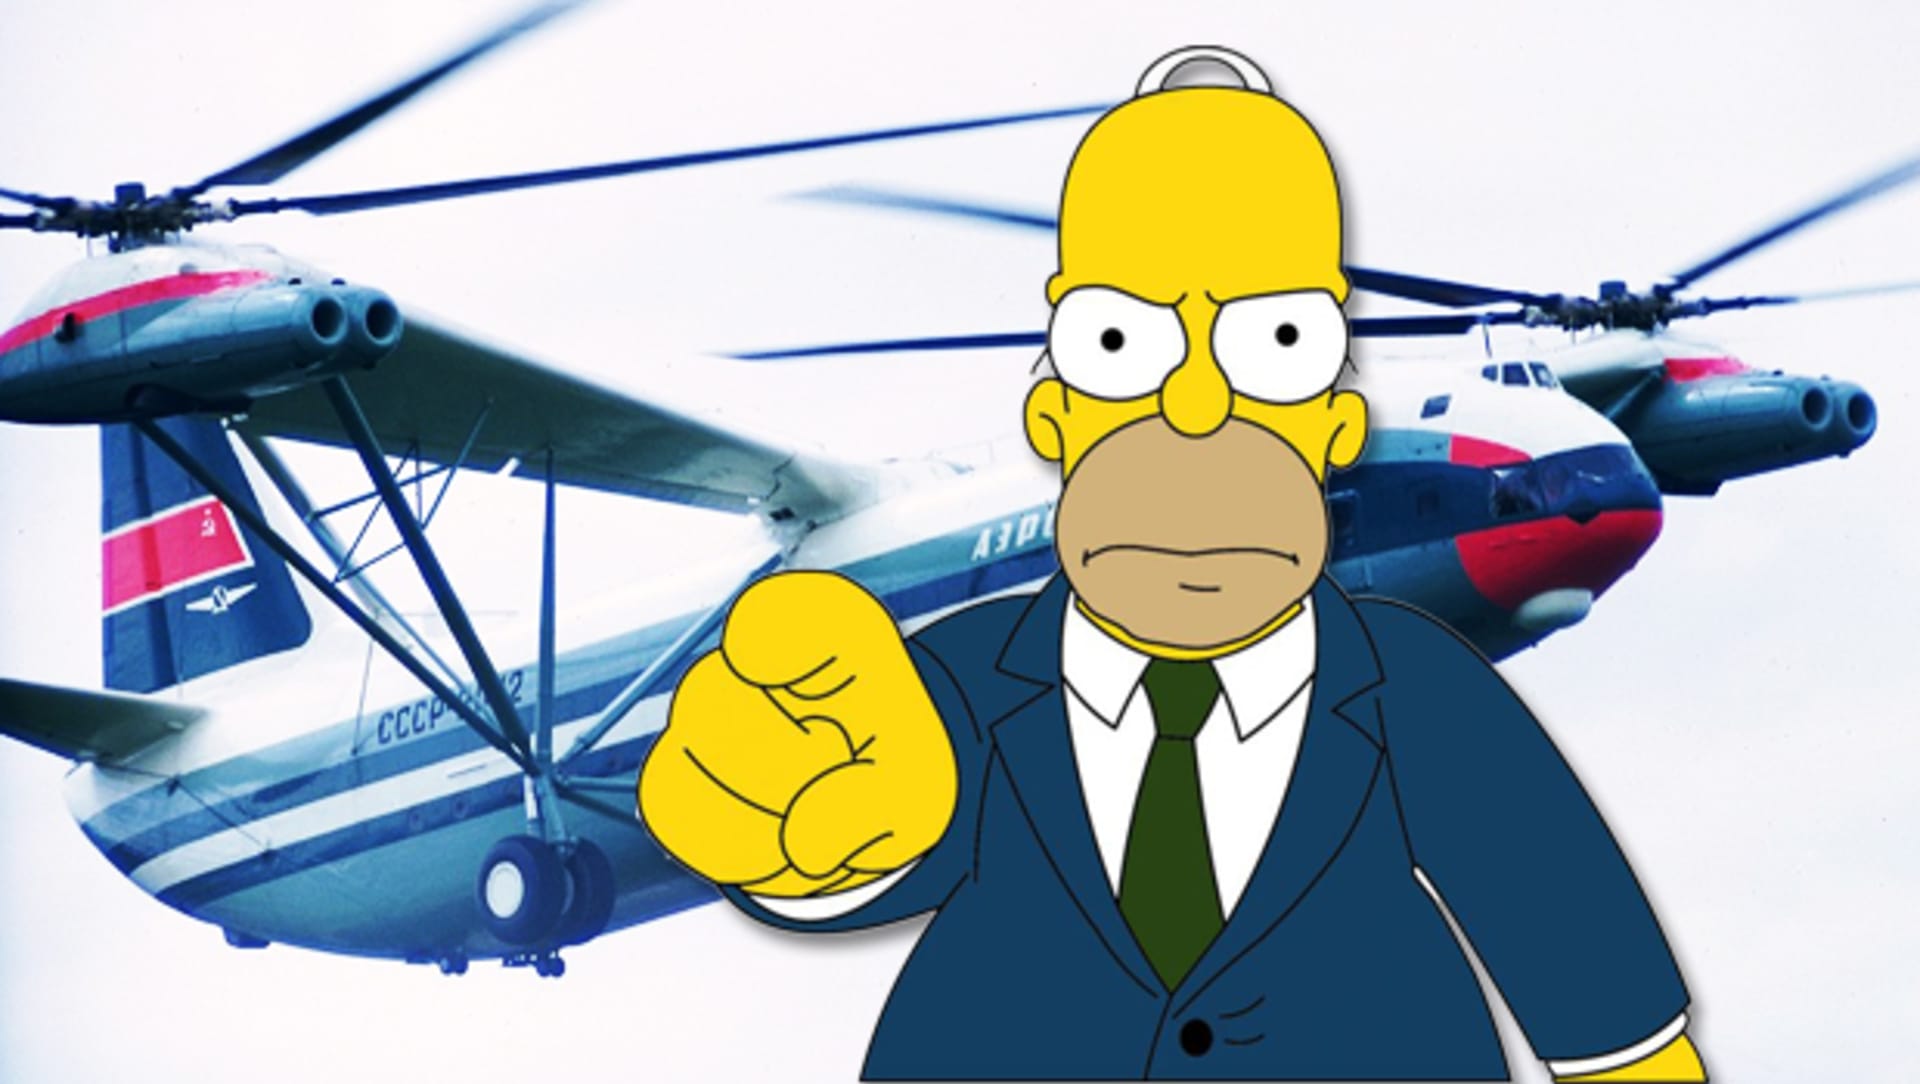 Vrtulník jménem Homer